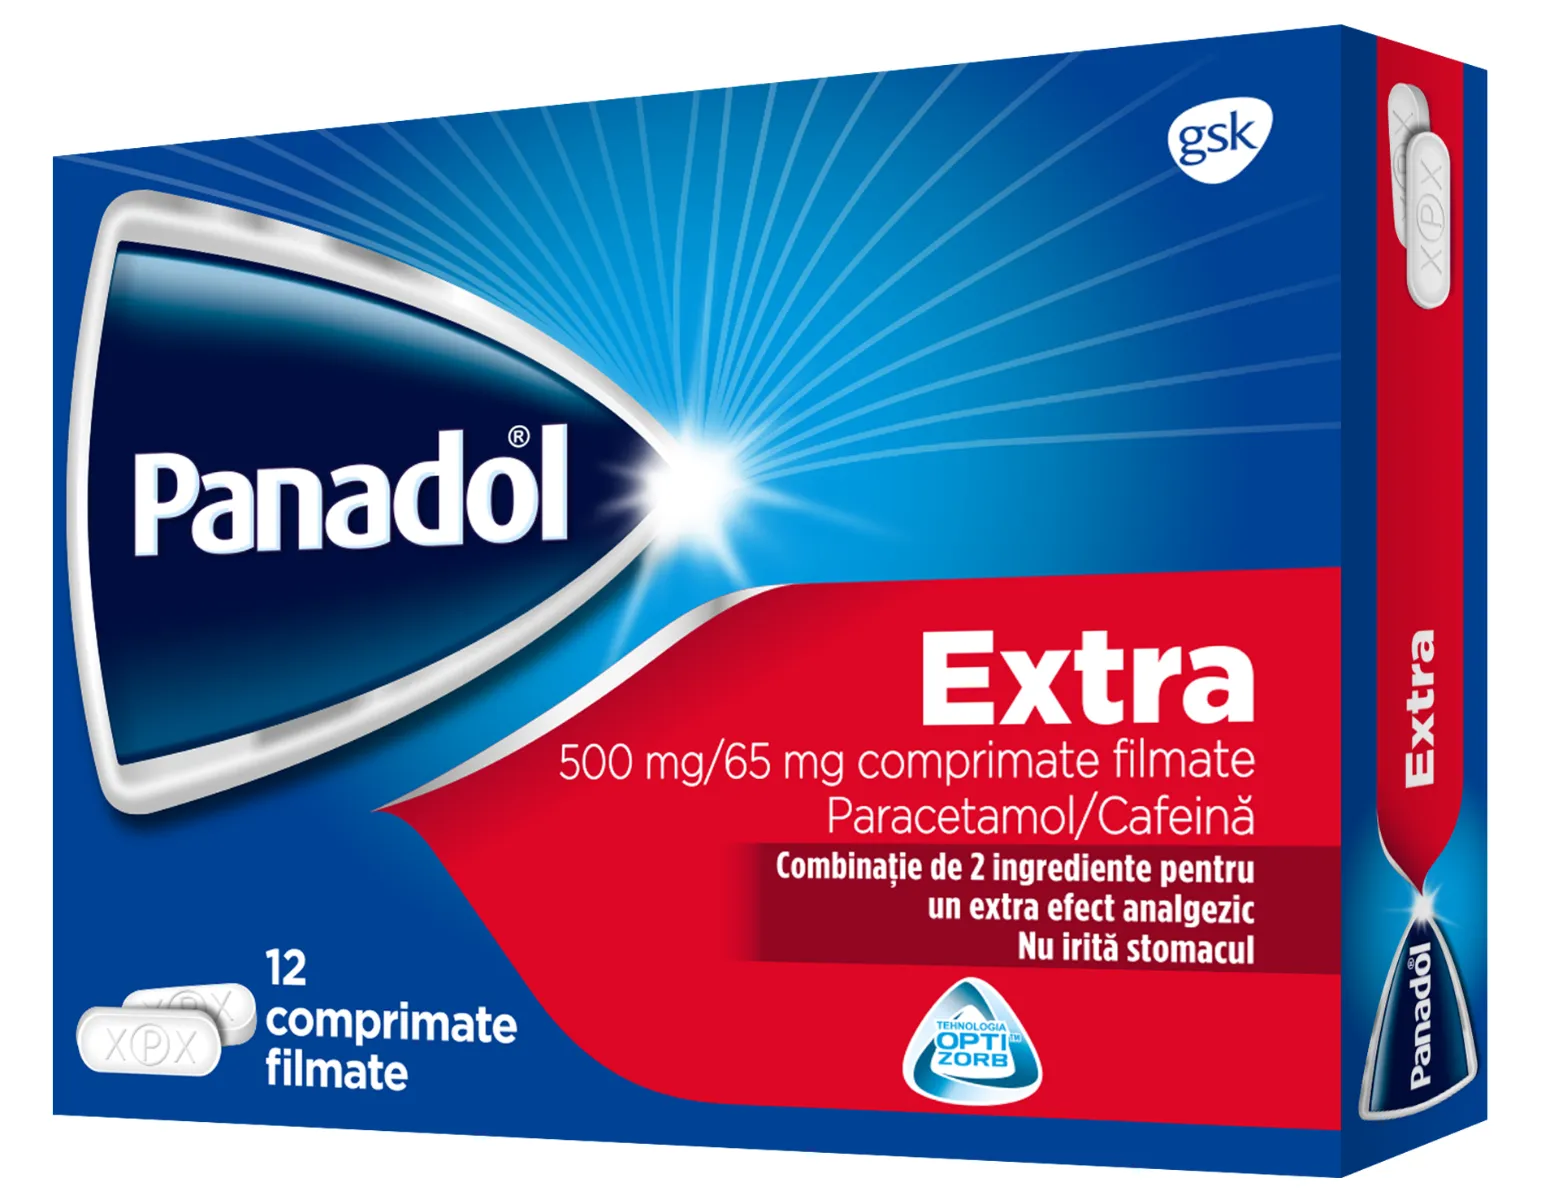 Panadol Extra 12 Comprimate Gsk Drmax Farmacie 1430